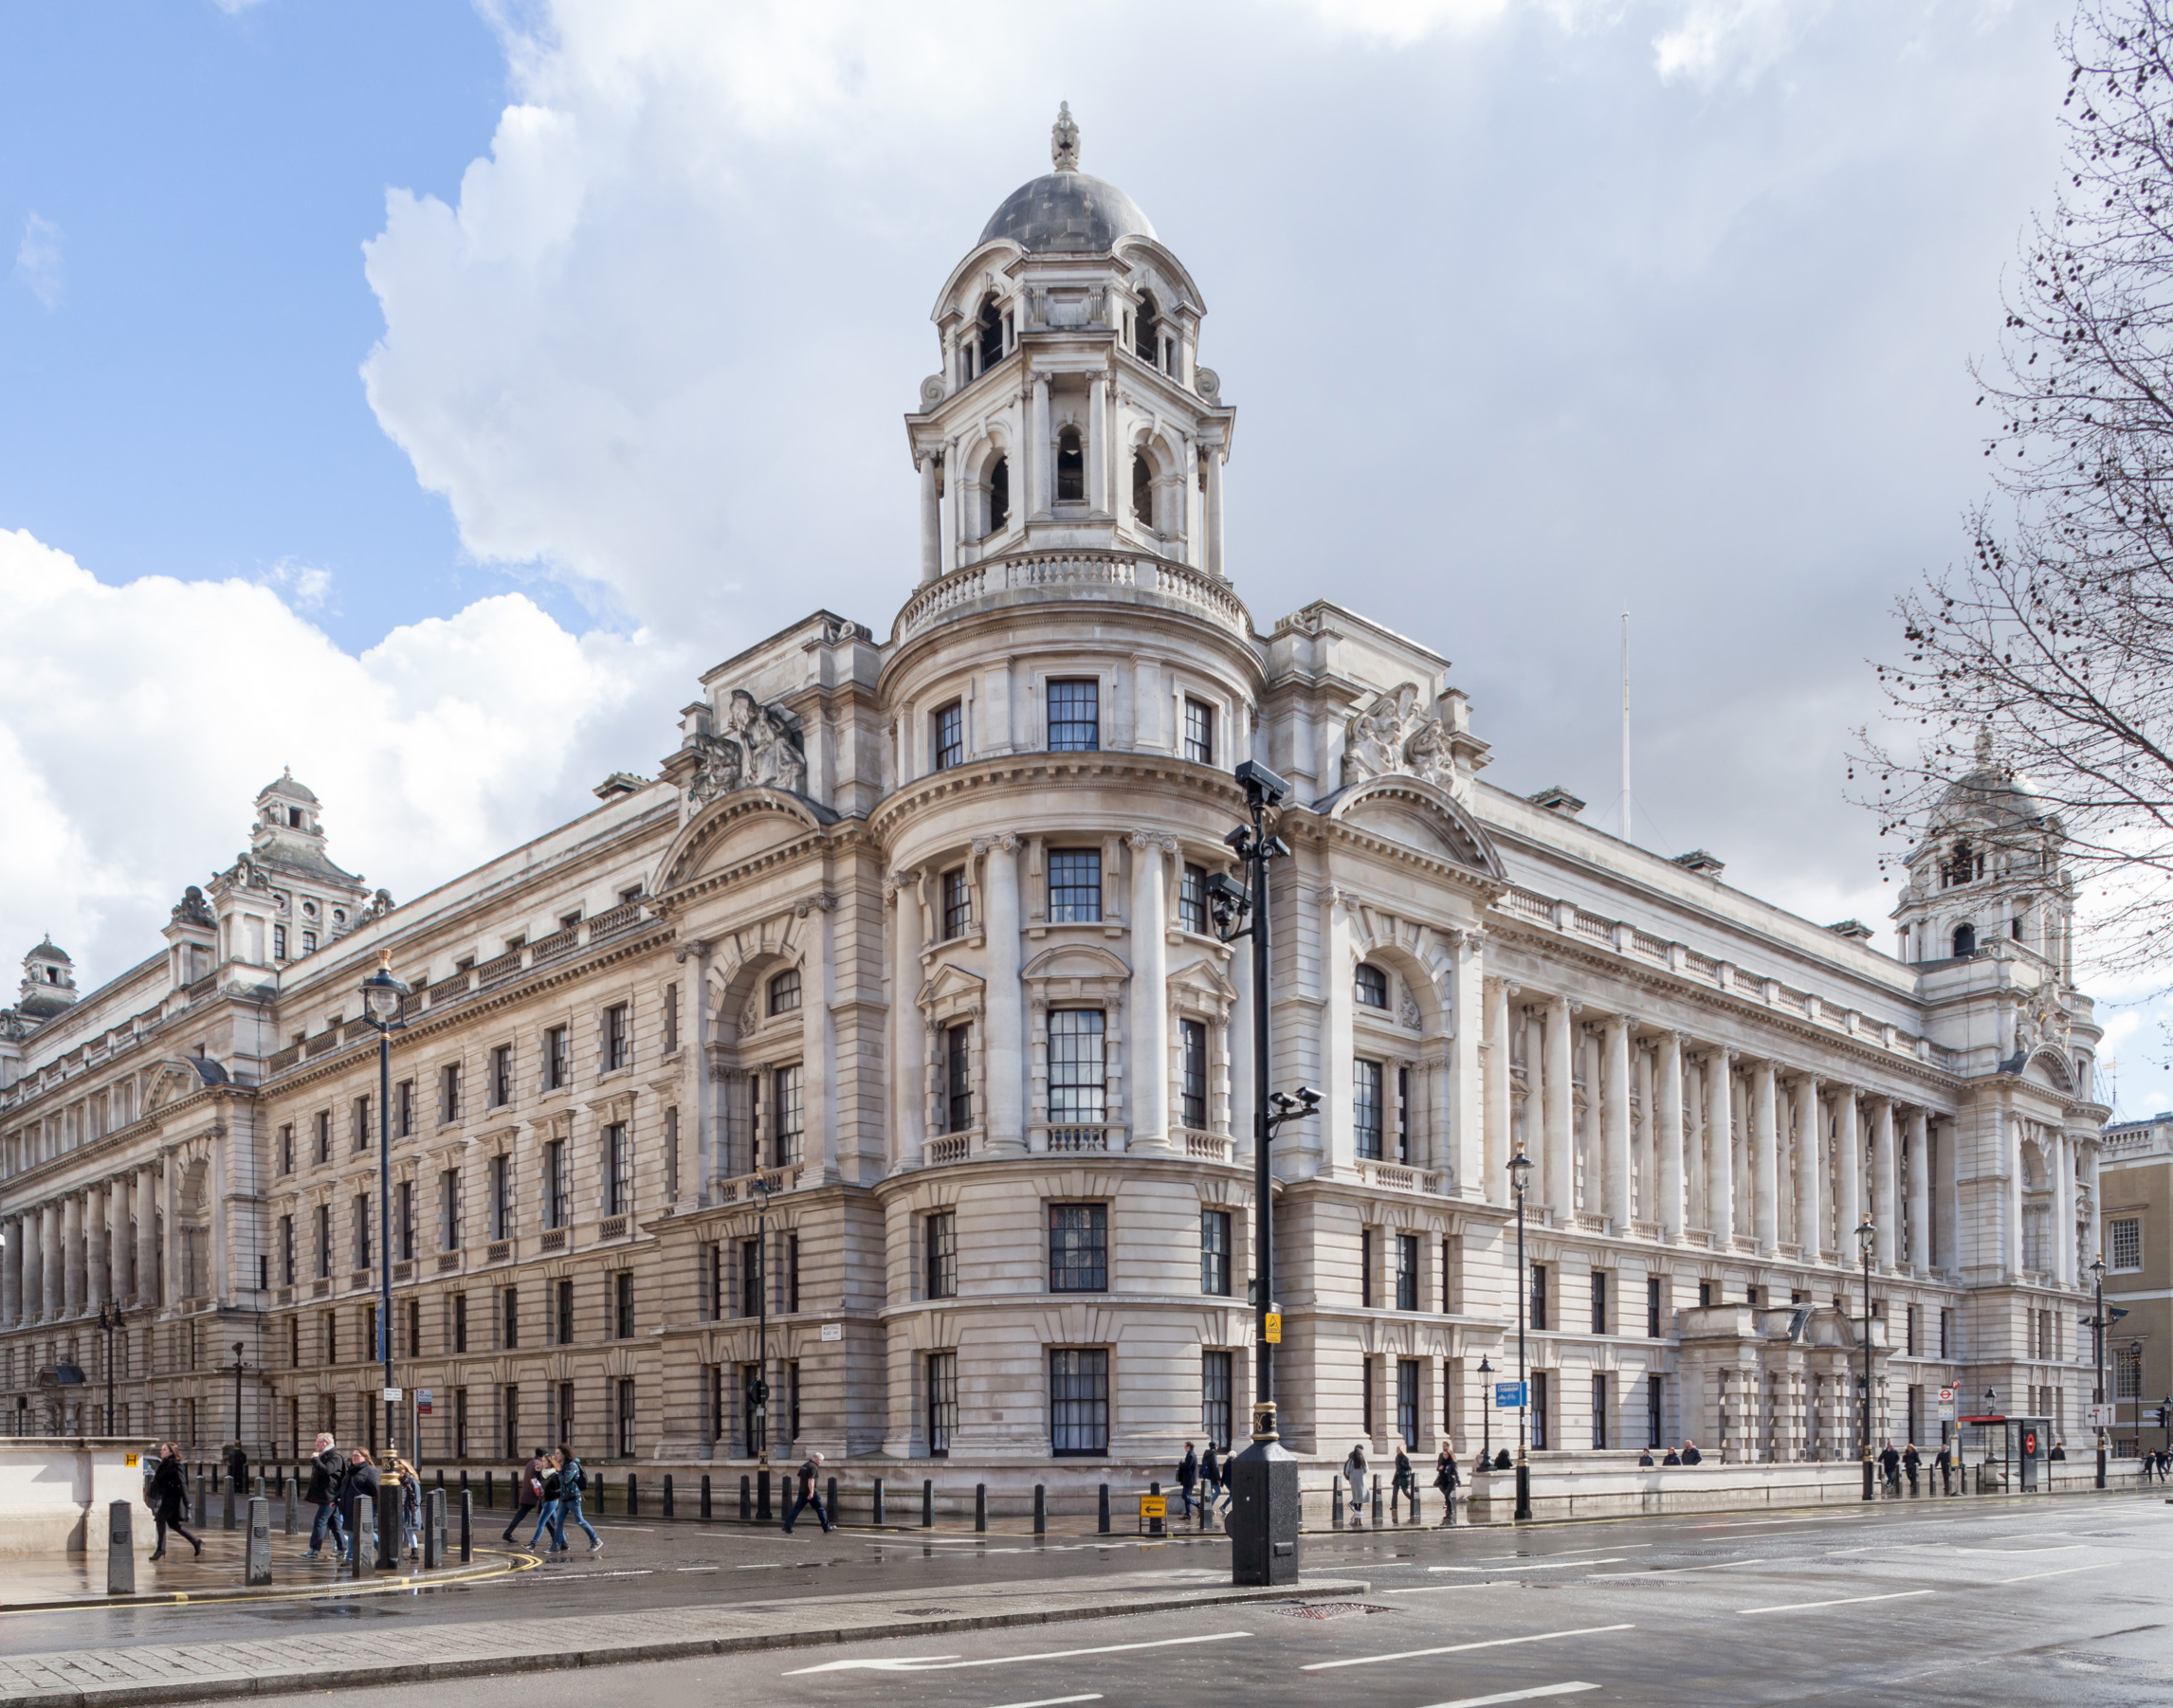 Old War Office, con una elegante fachada "Eduardiana" con vistas a Whitehall, se sitúa a poca distancia de la Abadía de Westminster, del 10 de Downing Street